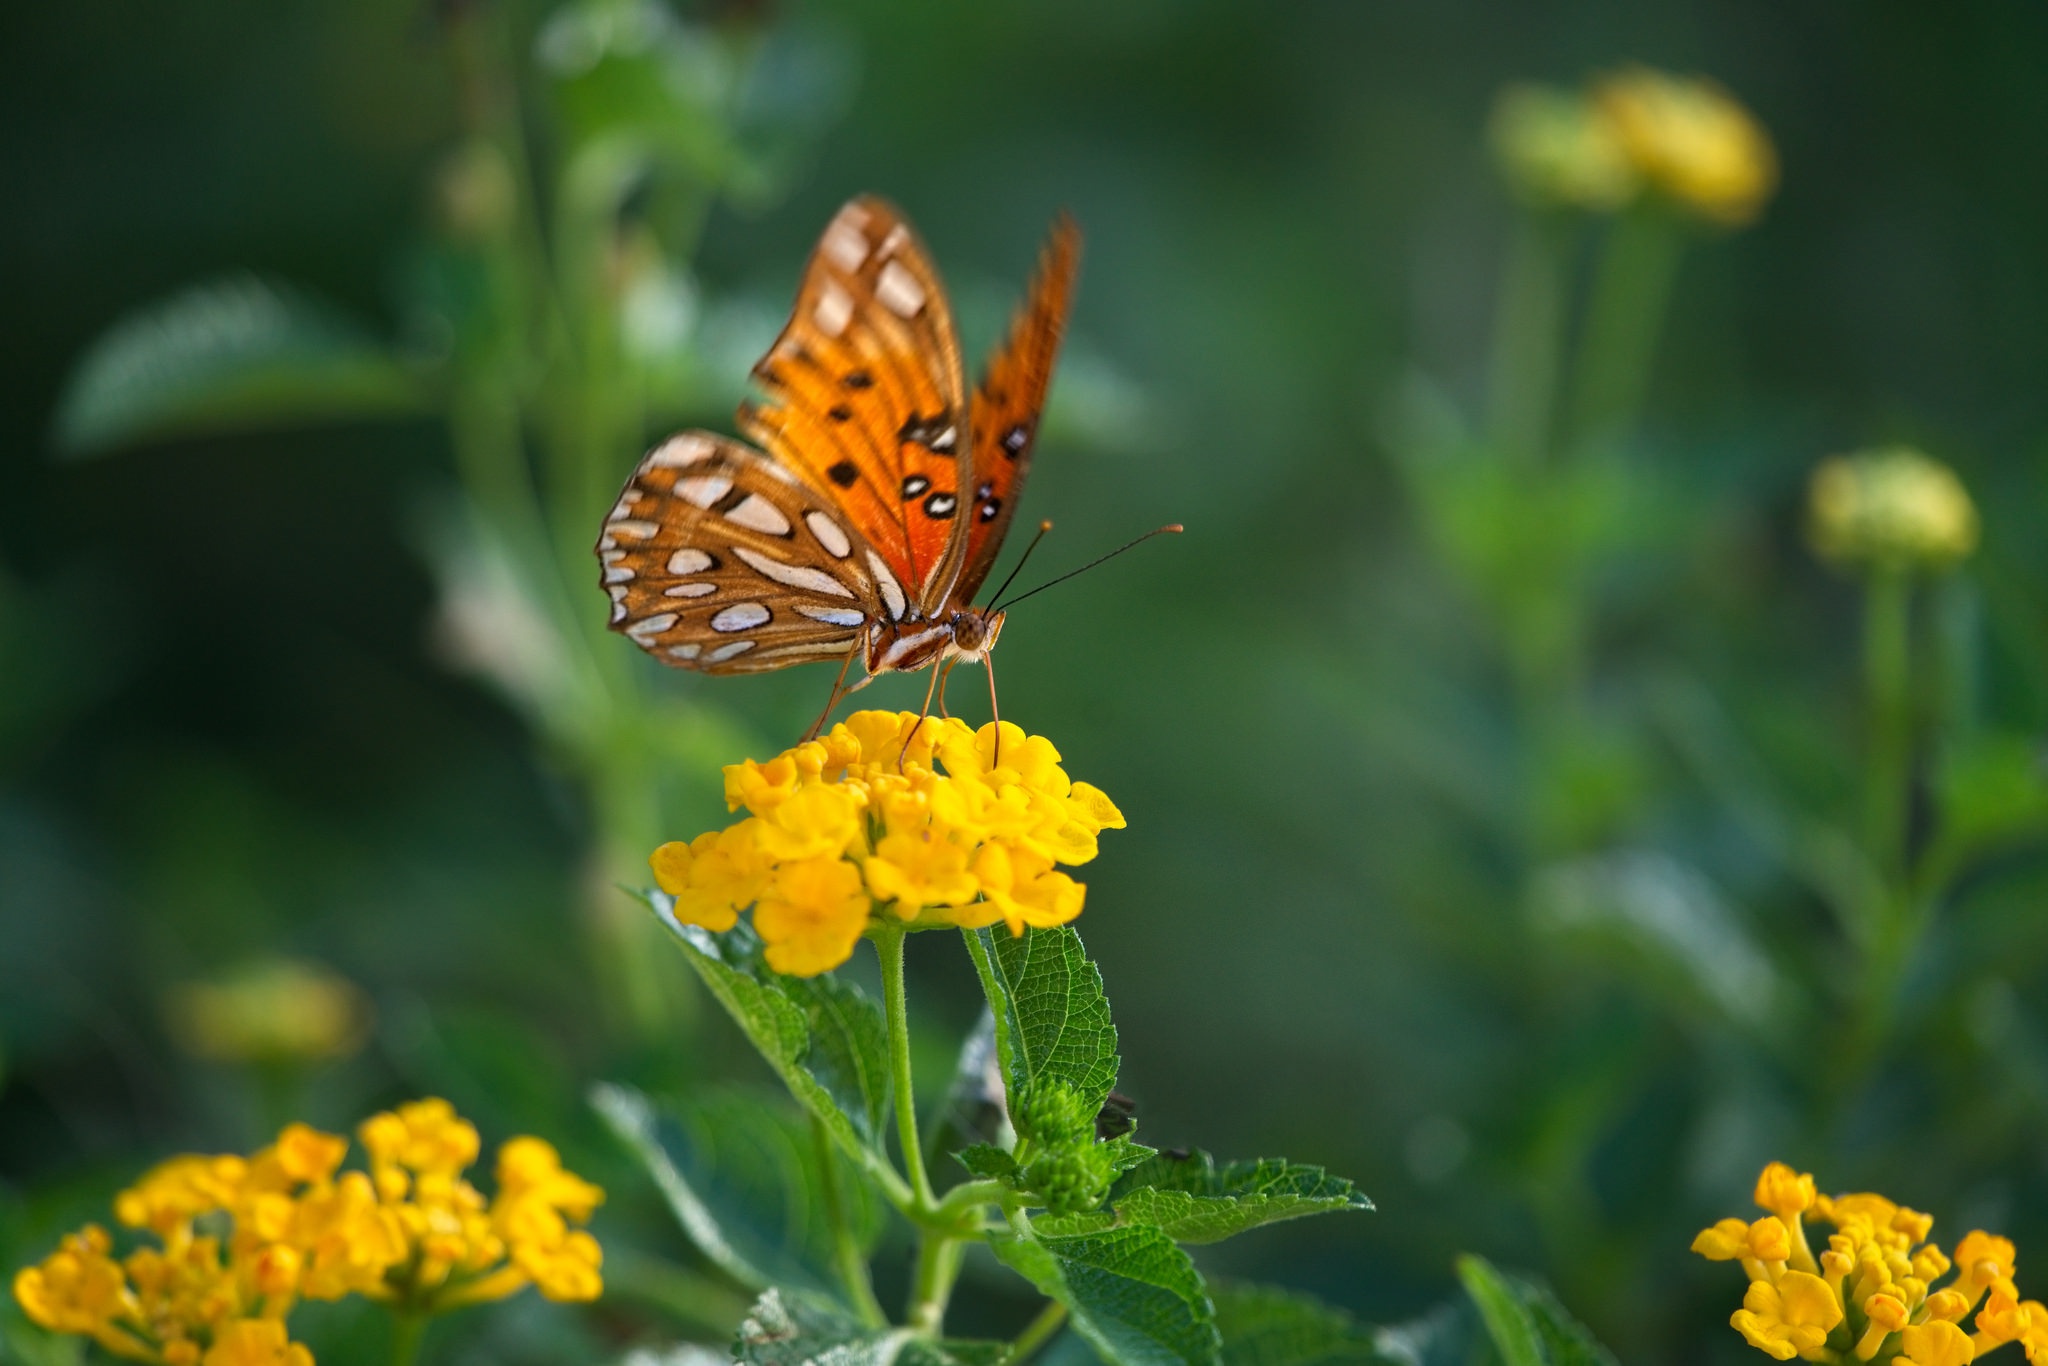 Descarga gratuita de fondo de pantalla para móvil de Animales, Insecto, Mariposa, Flor Amarilla, Macrofotografía.